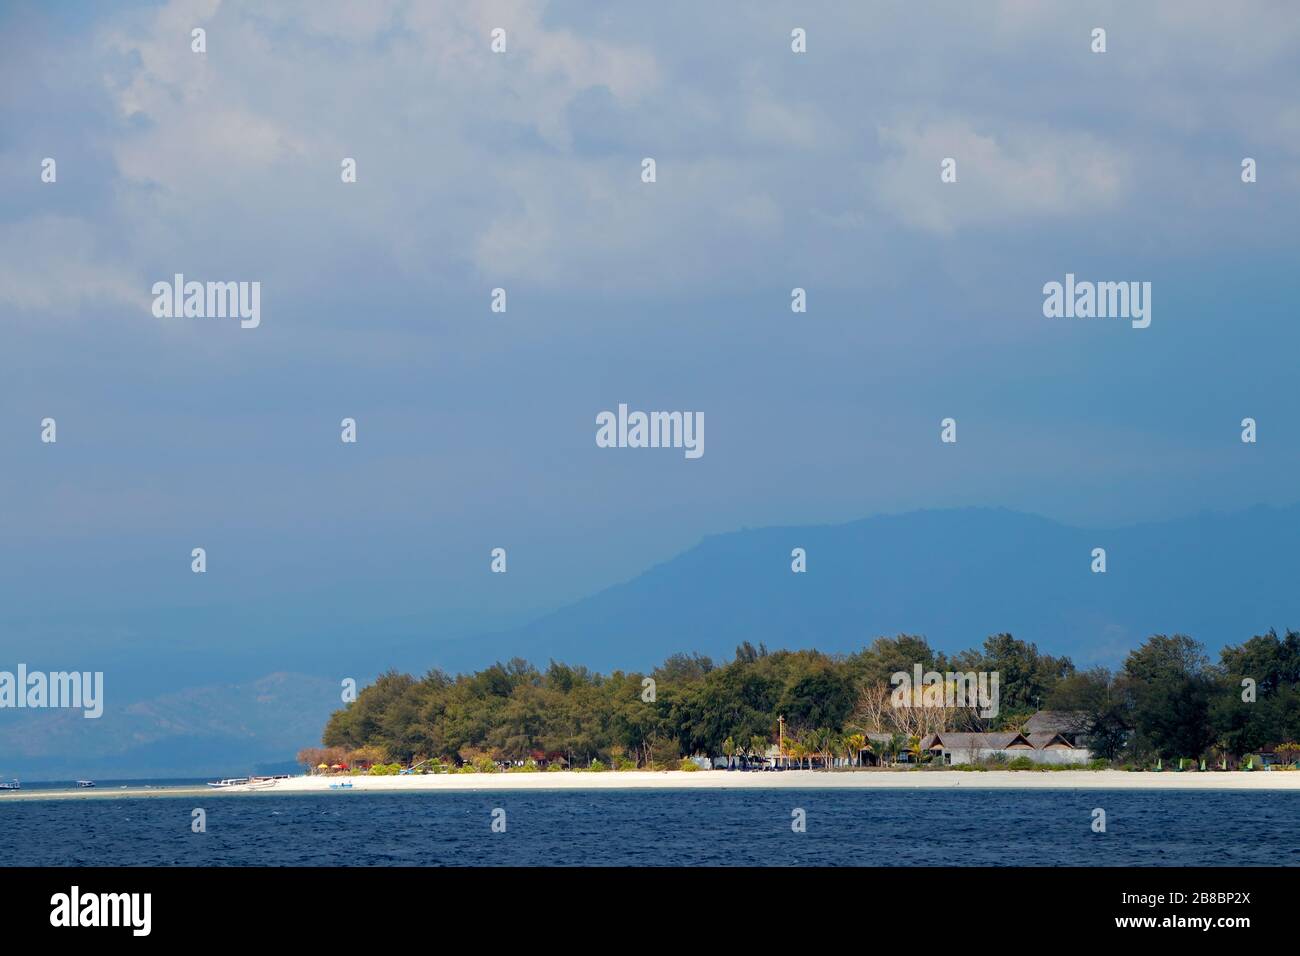 Panoramica isola tropicale indonesiana con spiagge di sabbia bianca contro un cielo scuro con nuvole Foto Stock